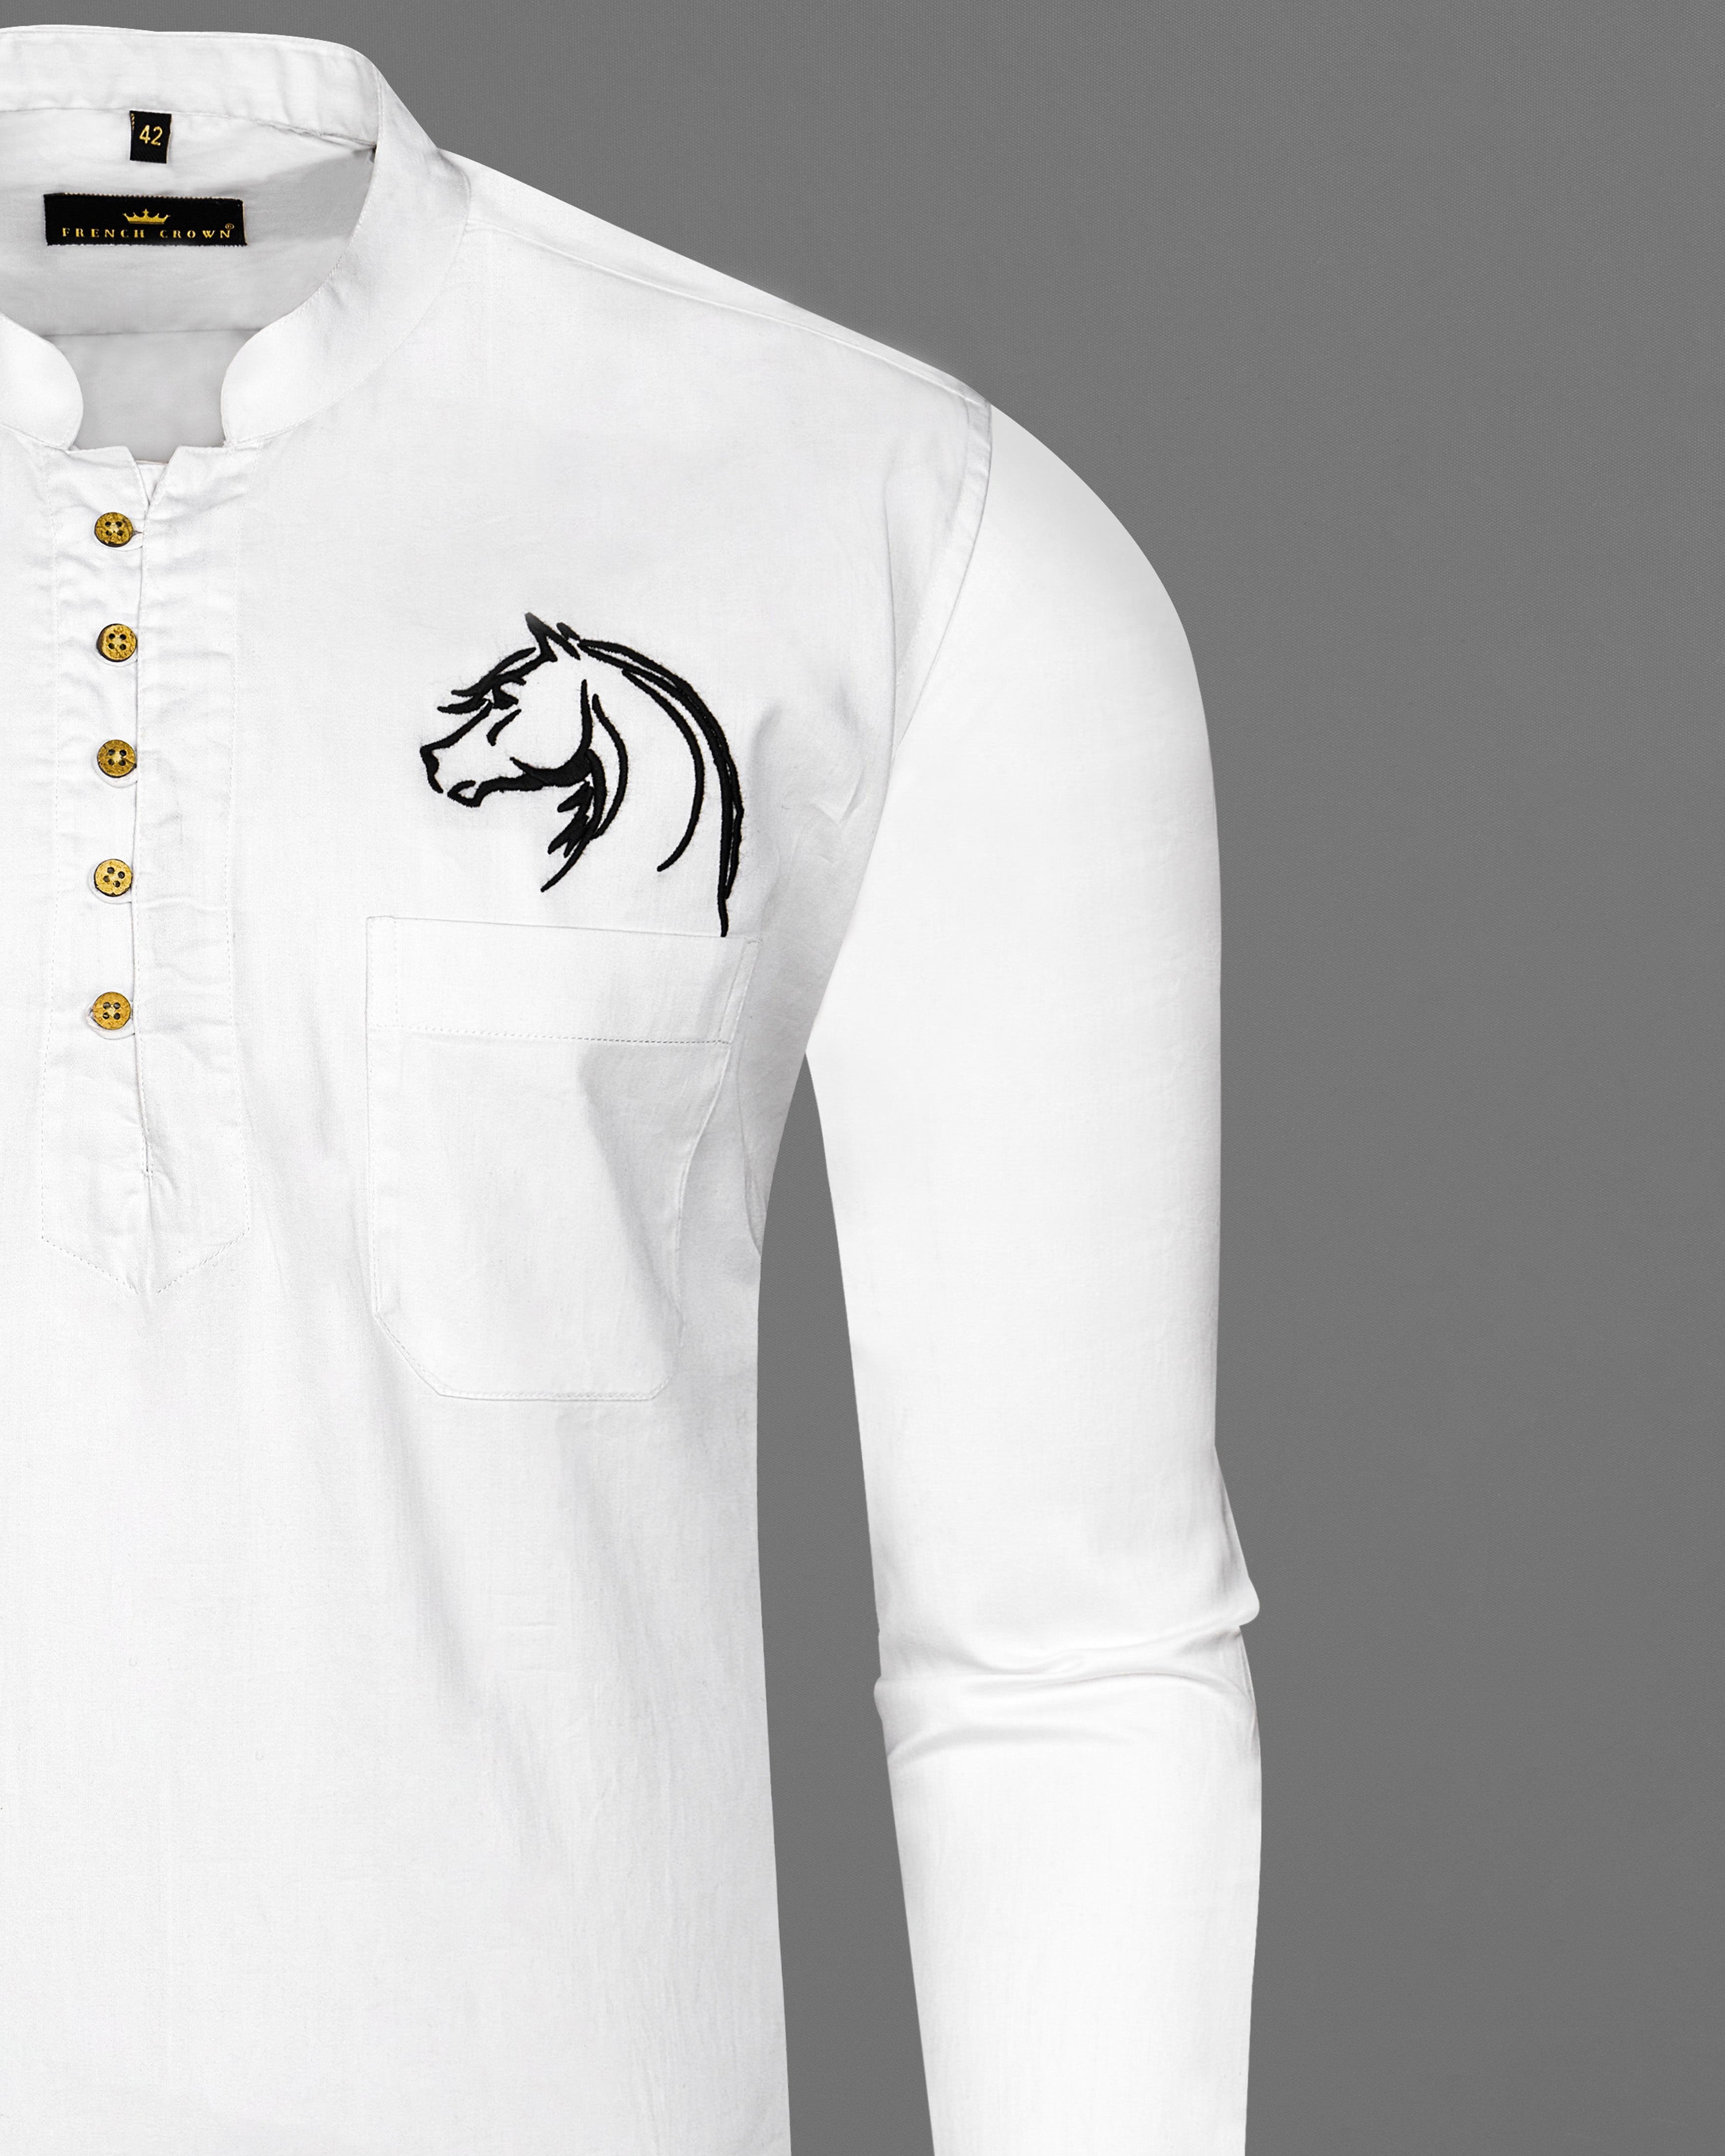 Bright White Subtle Sheen Horse Embroidered Super Soft Premium Cotton Kurta Shirt 2670-KS-E026-38,2670-KS-E026-H-38,2670-KS-E026-39,2670-KS-E026-H-39,2670-KS-E026-40,2670-KS-E026-H-40,2670-KS-E026-42,2670-KS-E026-H-42,2670-KS-E026-44,2670-KS-E026-H-44,2670-KS-E026-46,2670-KS-E026-H-46,2670-KS-E026-48,2670-KS-E026-H-48,2670-KS-E026-50,2670-KS-E026-H-50,2670-KS-E026-52,2670-KS-E026-H-52